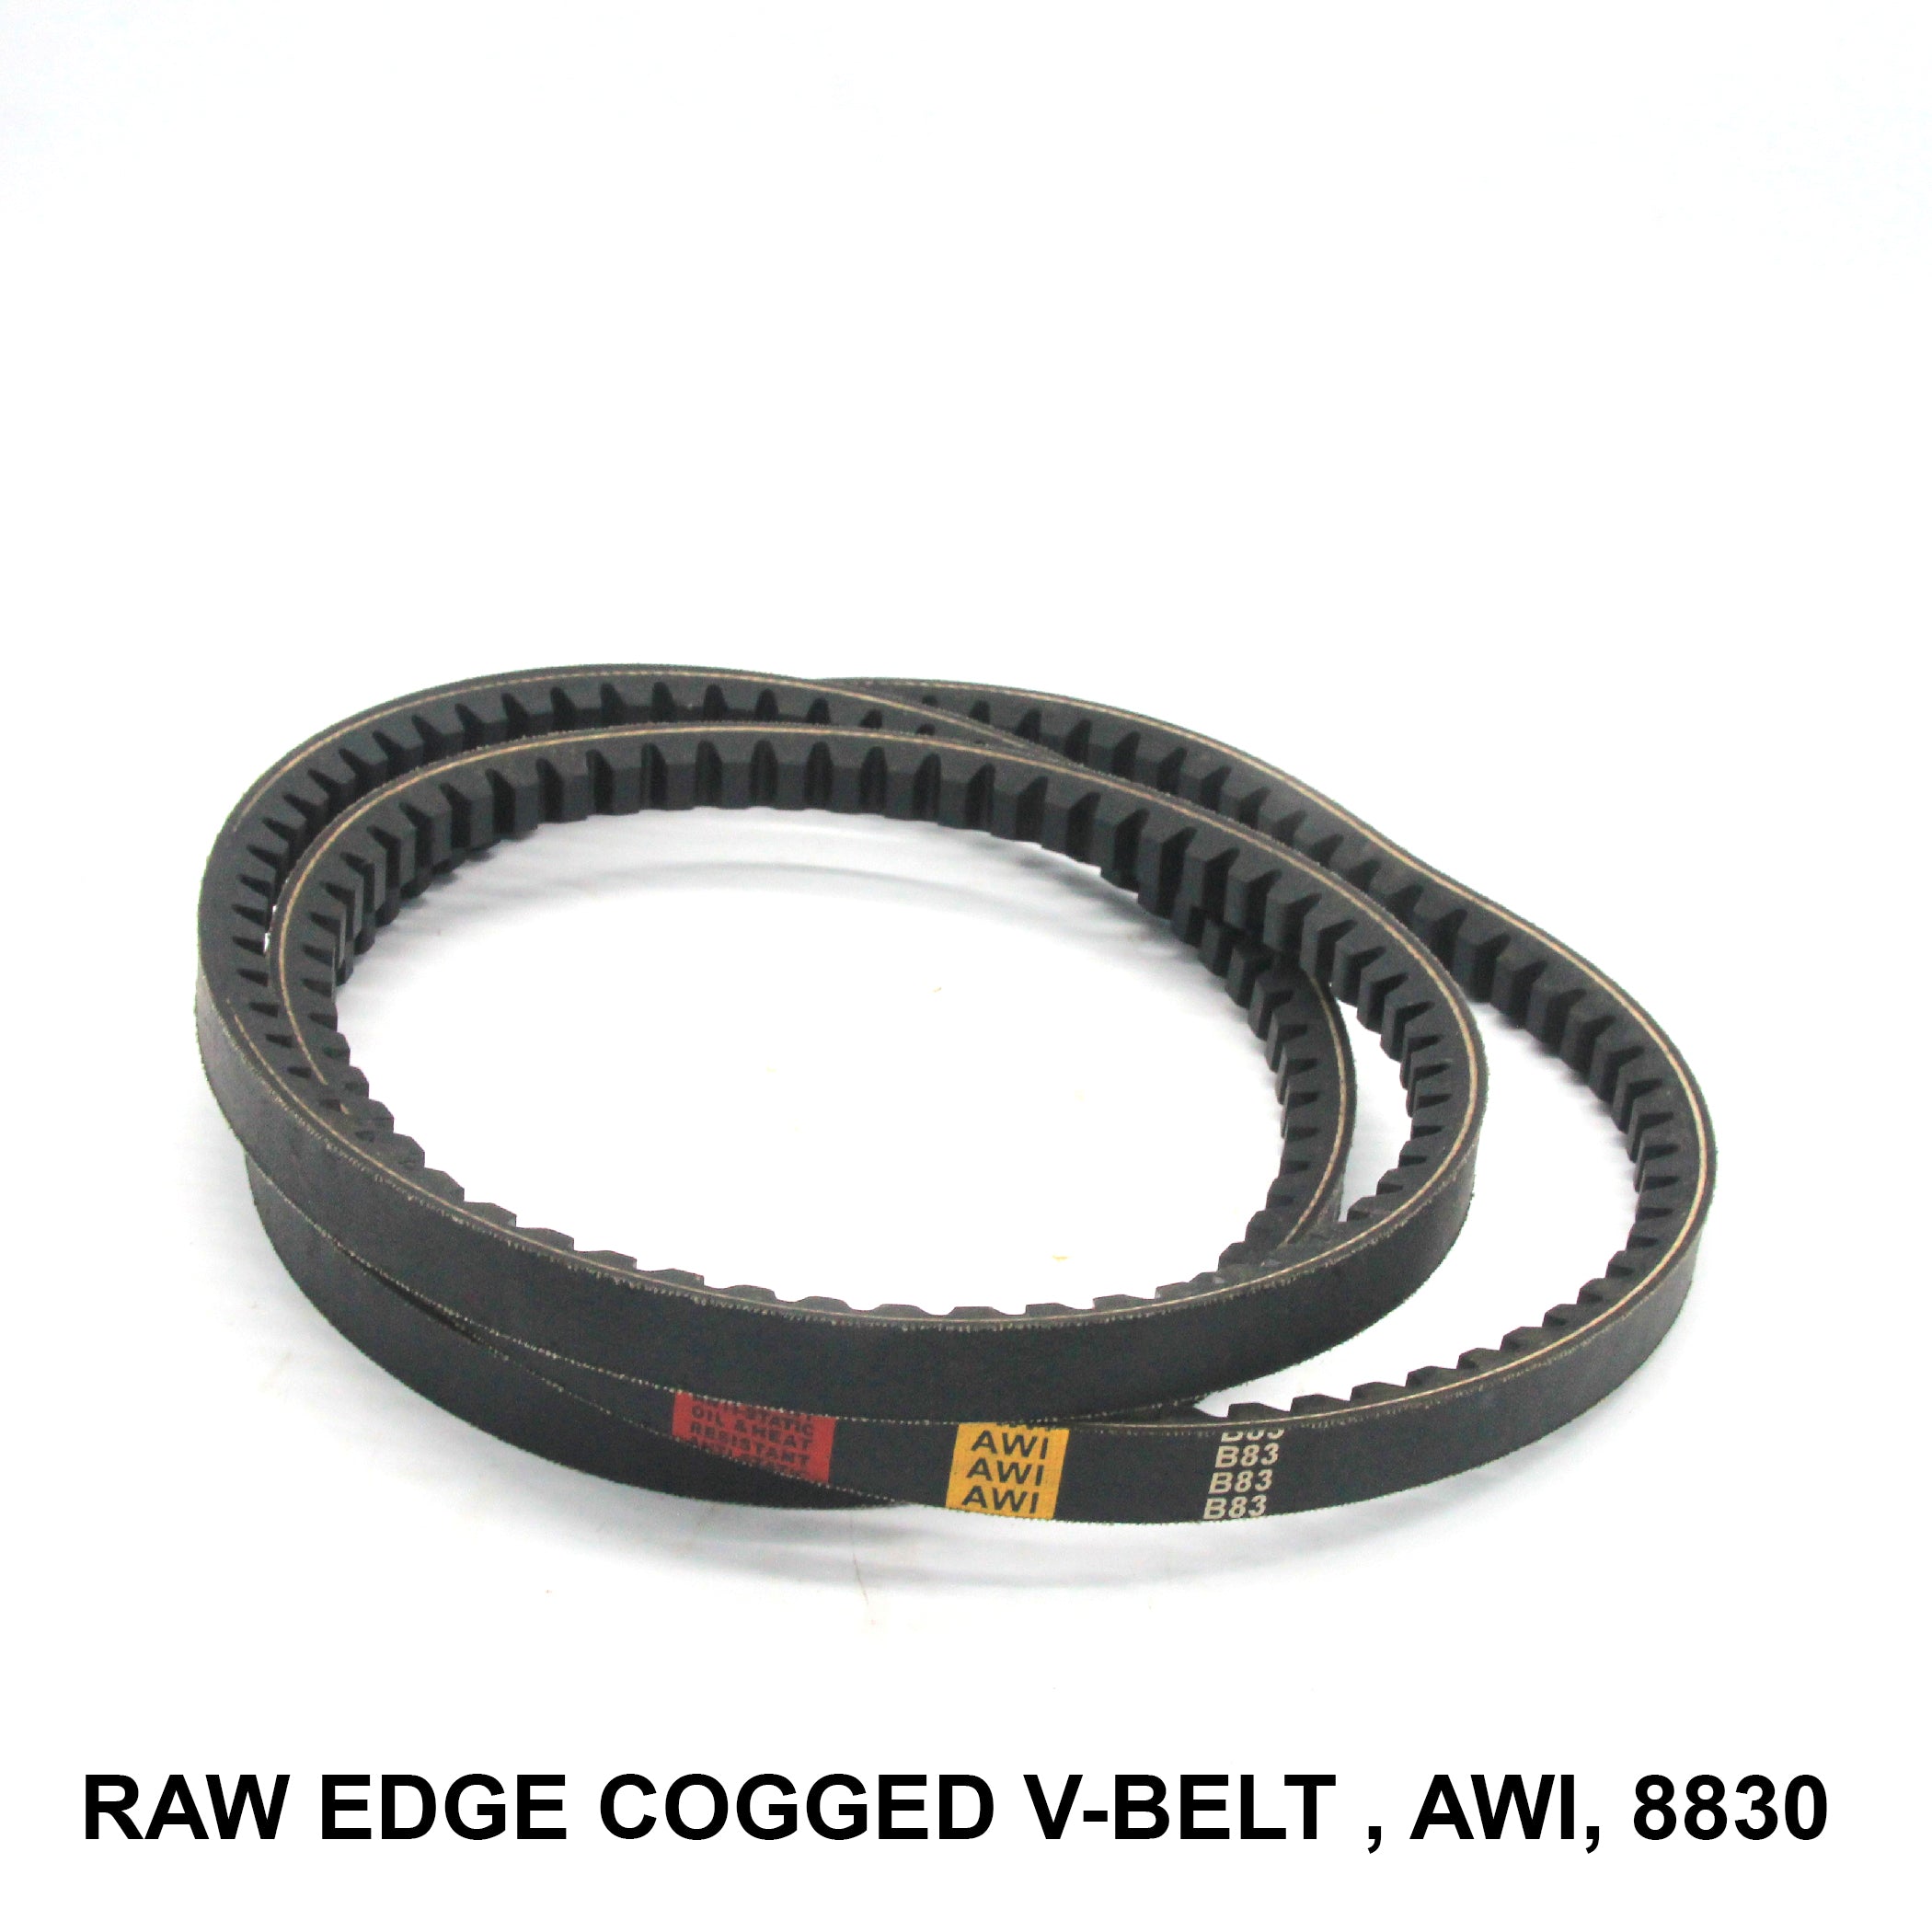 สายพานร่องวี Raw Edge Cogged (RECMF) พร้อมเทคโนโลยี AWI